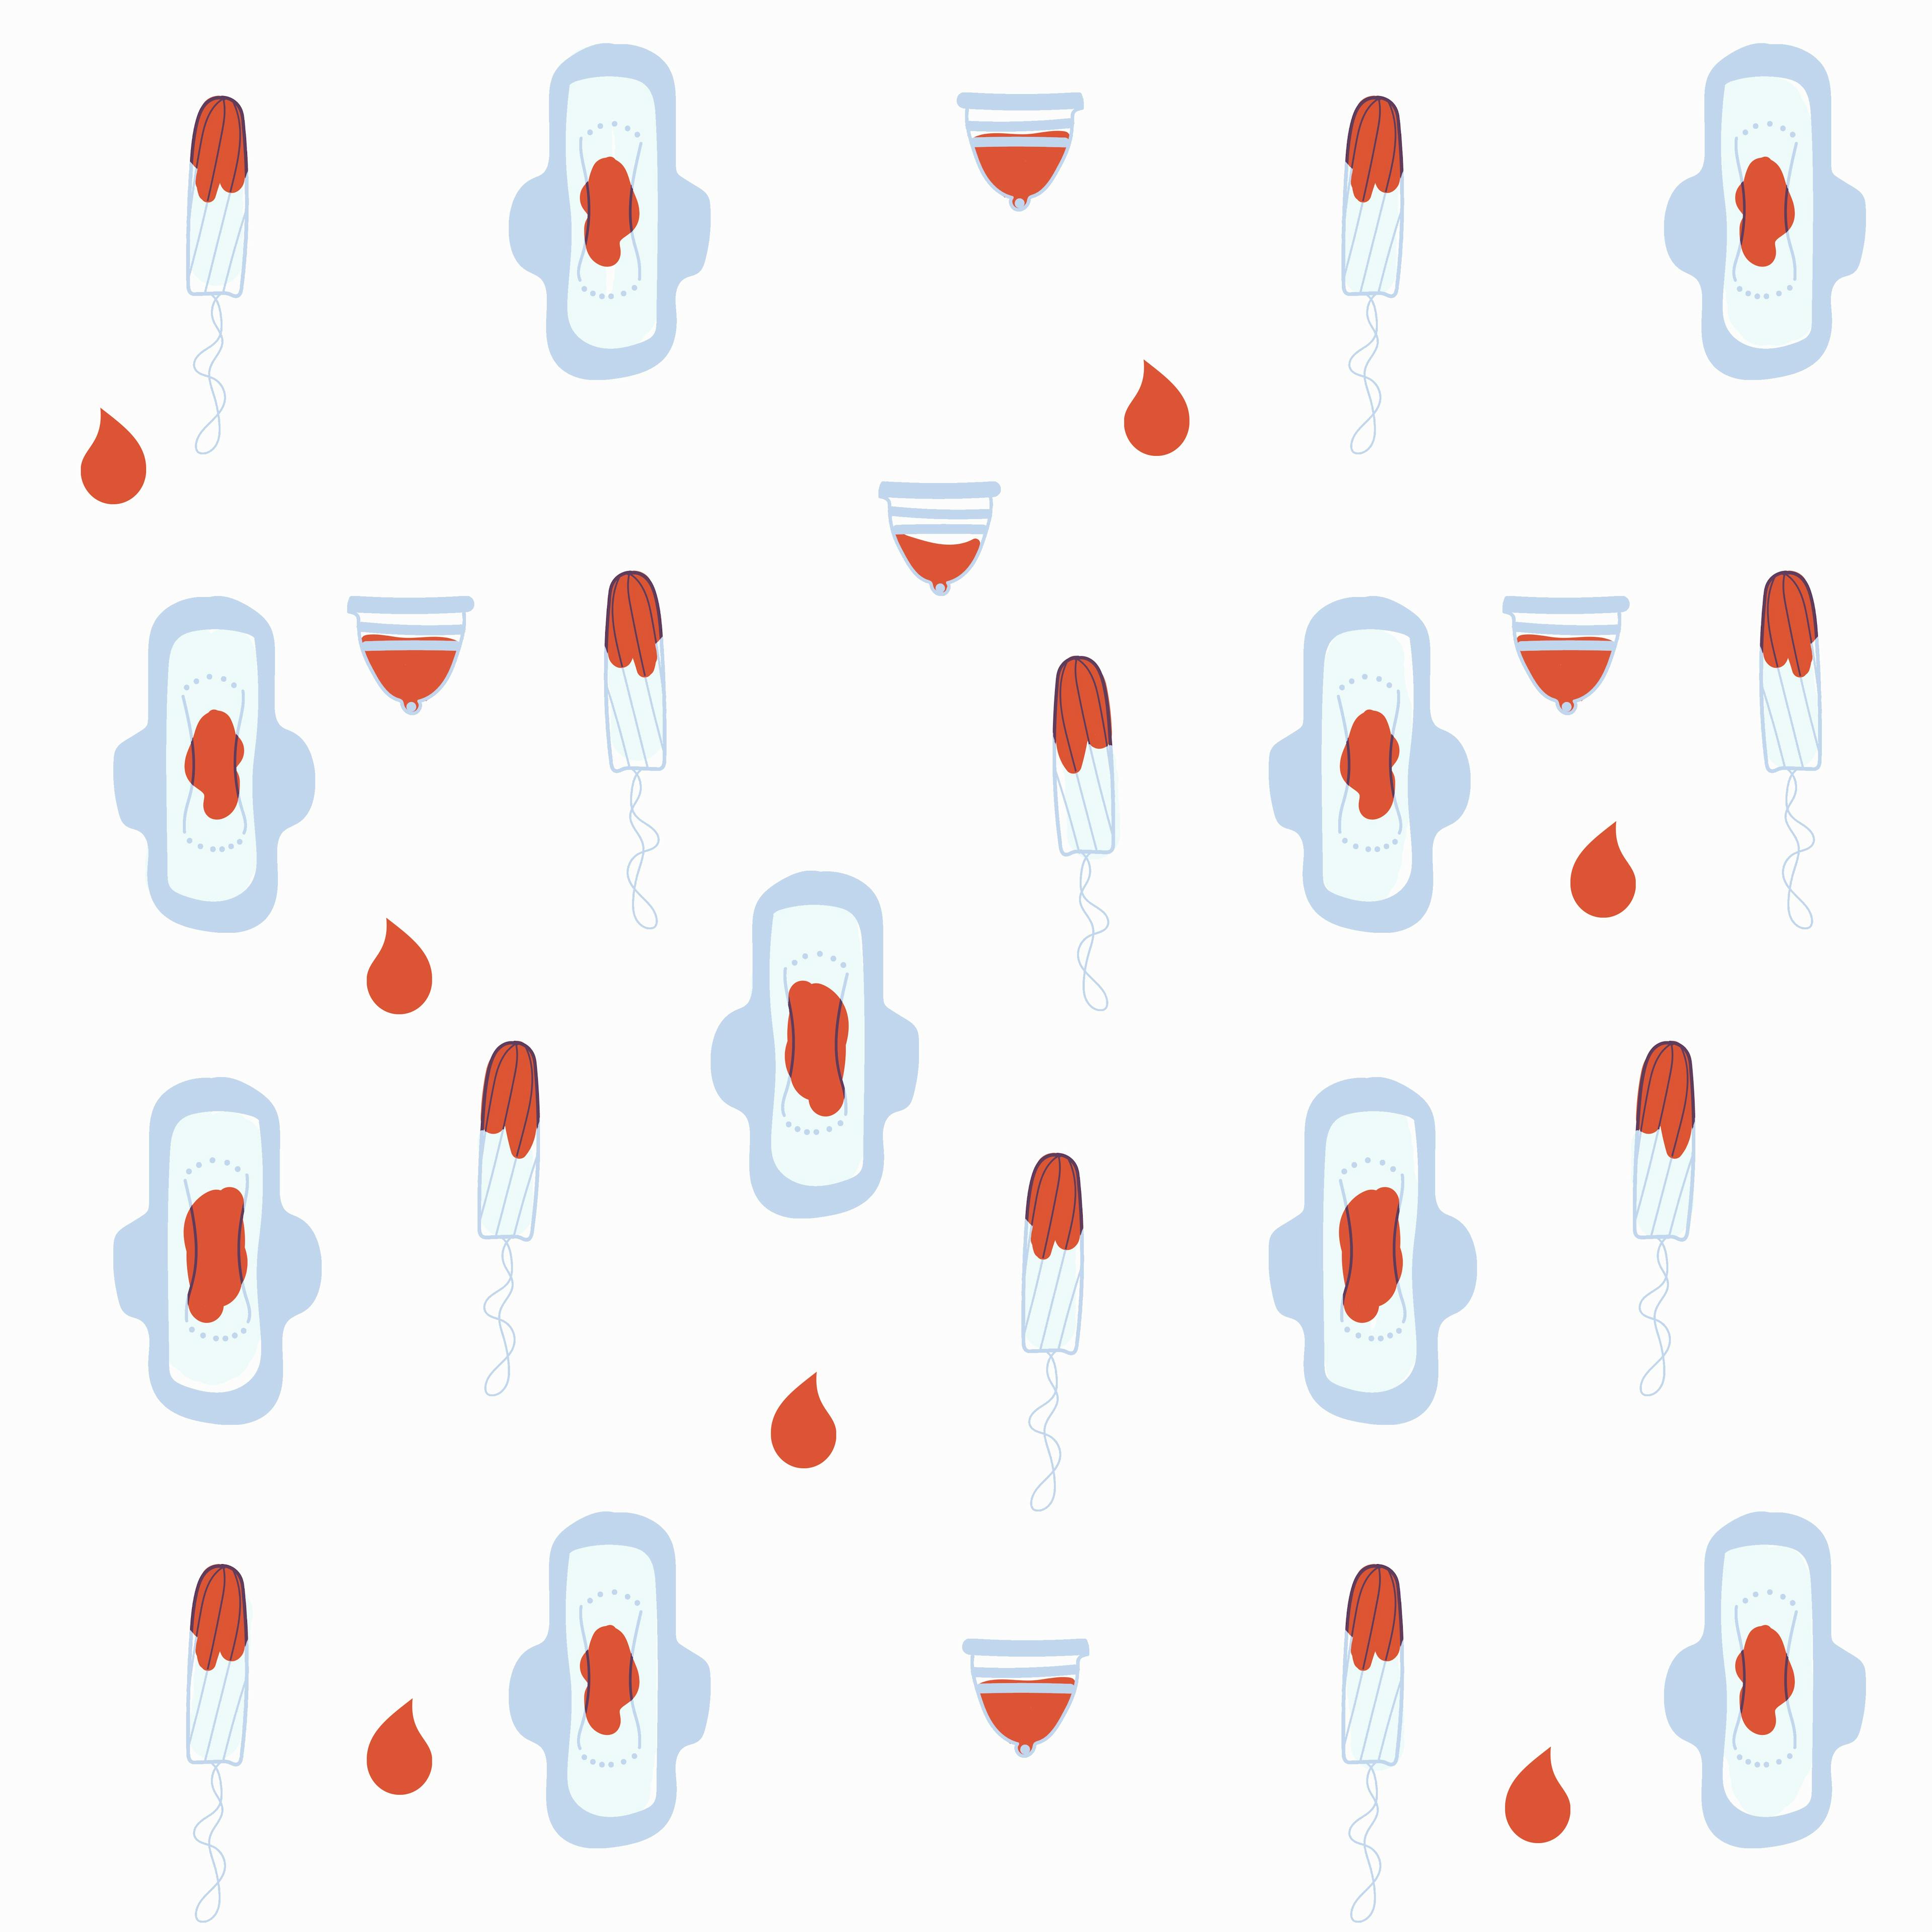 1-2 napig tartó vérzés esetén gyenge menzeszről beszélünk